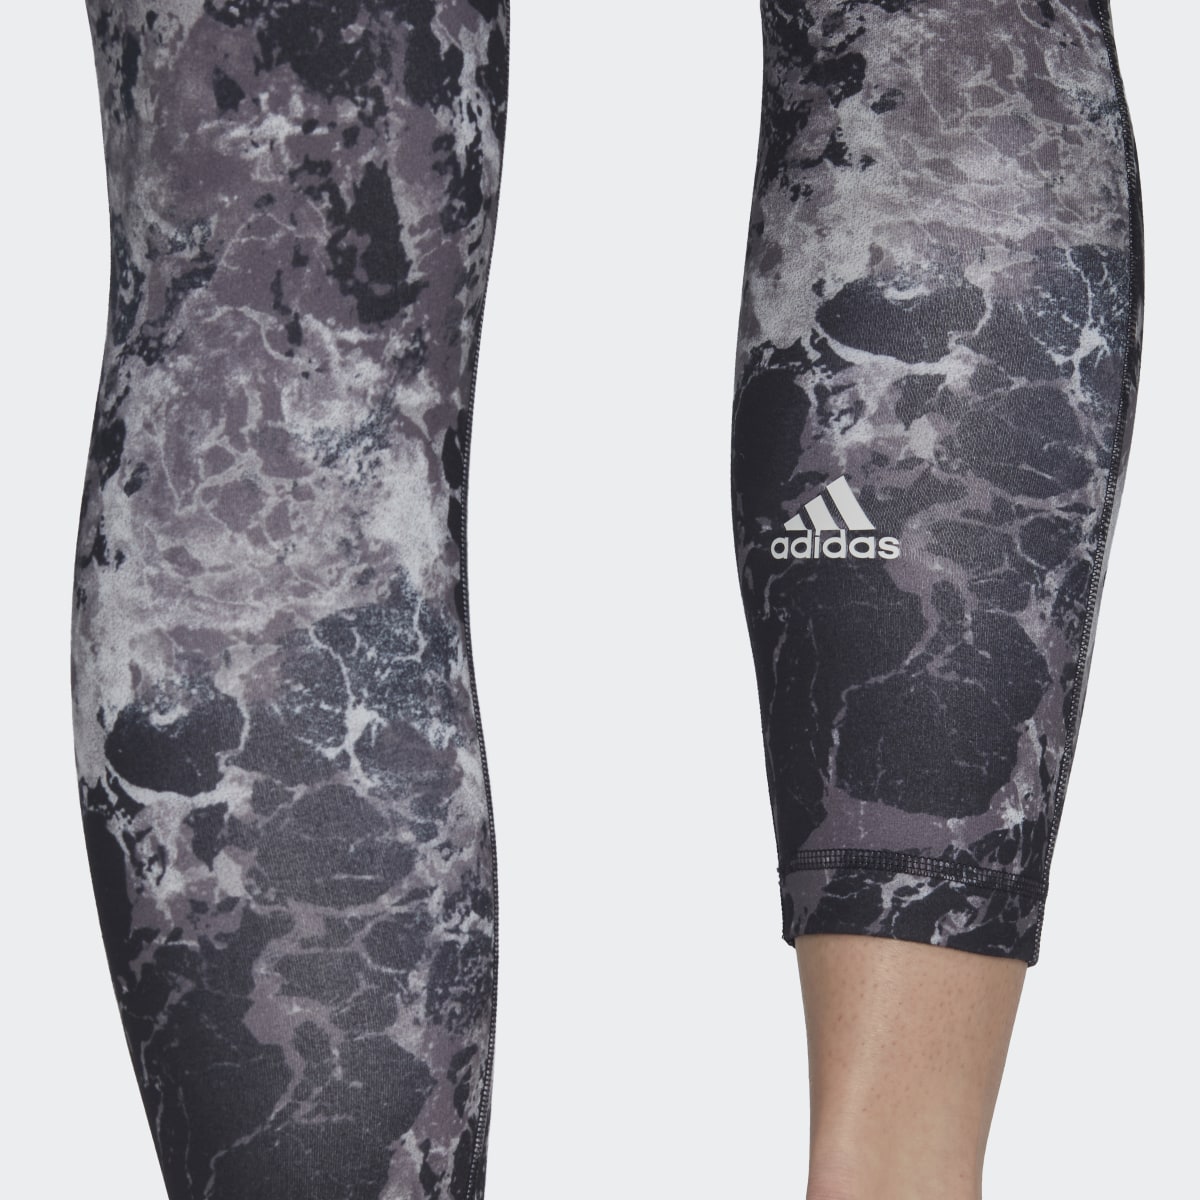 Adidas Yoga Essentials Print 7/8 Leggings. 6